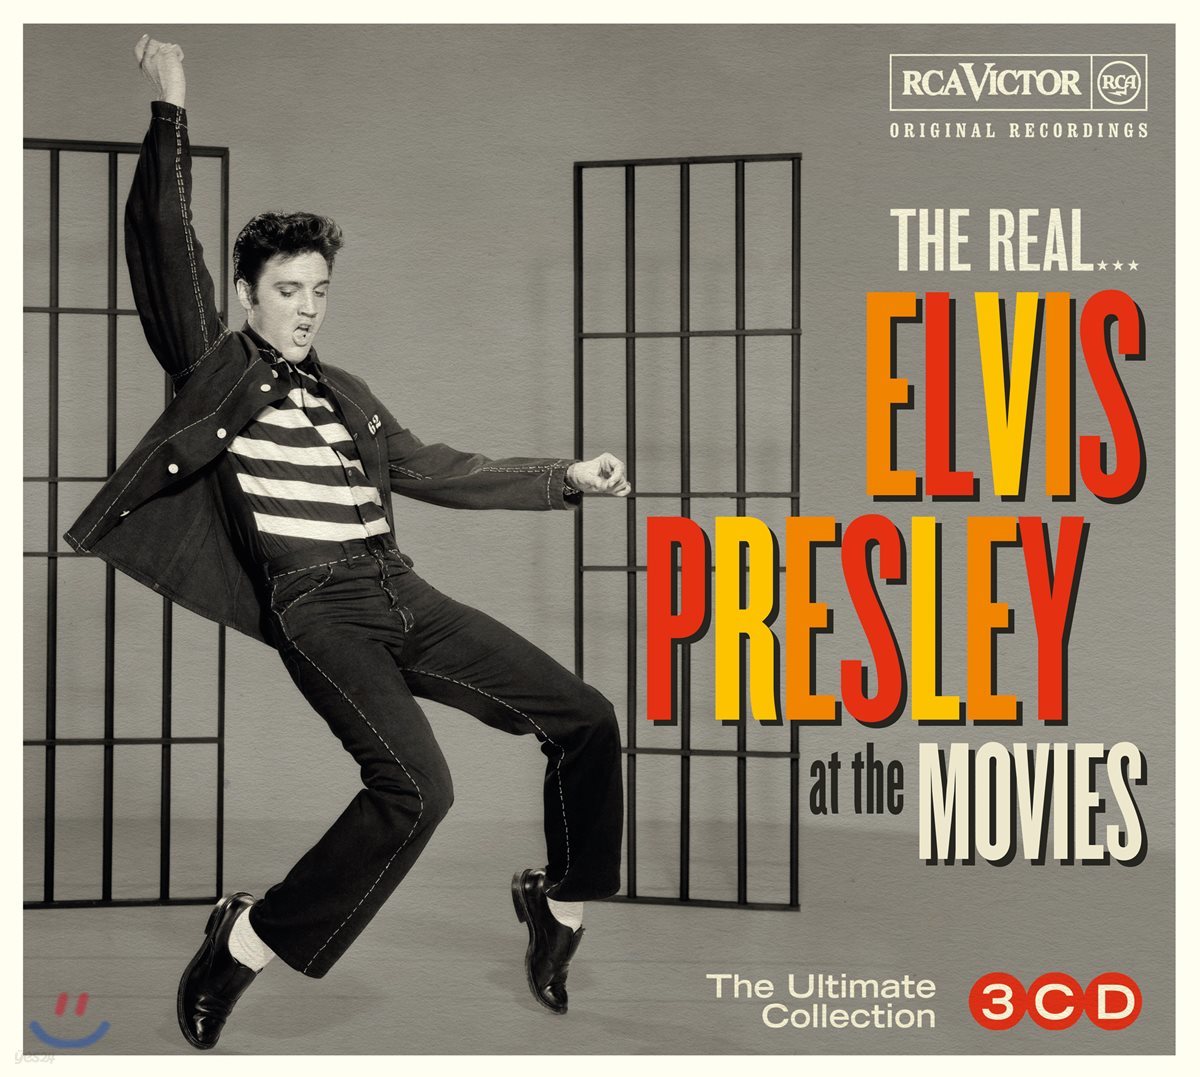 엘비스 프레슬리 영화 음악 모음집 (The Real… Elvis Presley At the Movies The Ultimate Elvis Presley Collection)